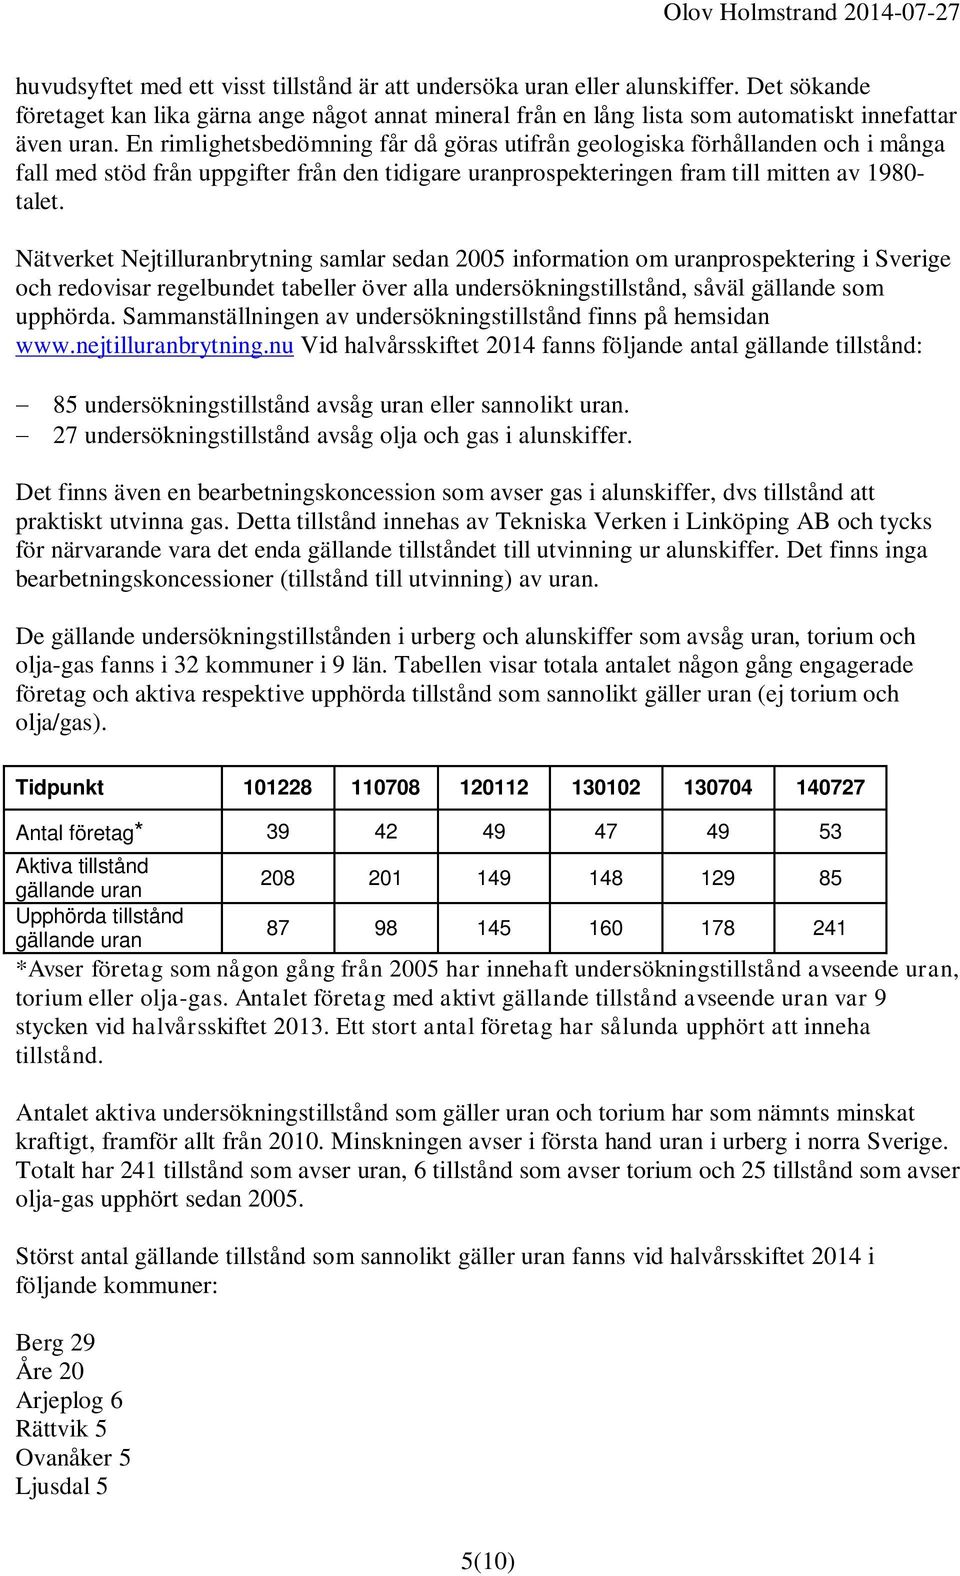 Nätverket Nejtilluranbrytning samlar sedan 2005 information om uranprospektering i Sverige och redovisar regelbundet tabeller över alla undersökningstillstånd, såväl gällande som upphörda.